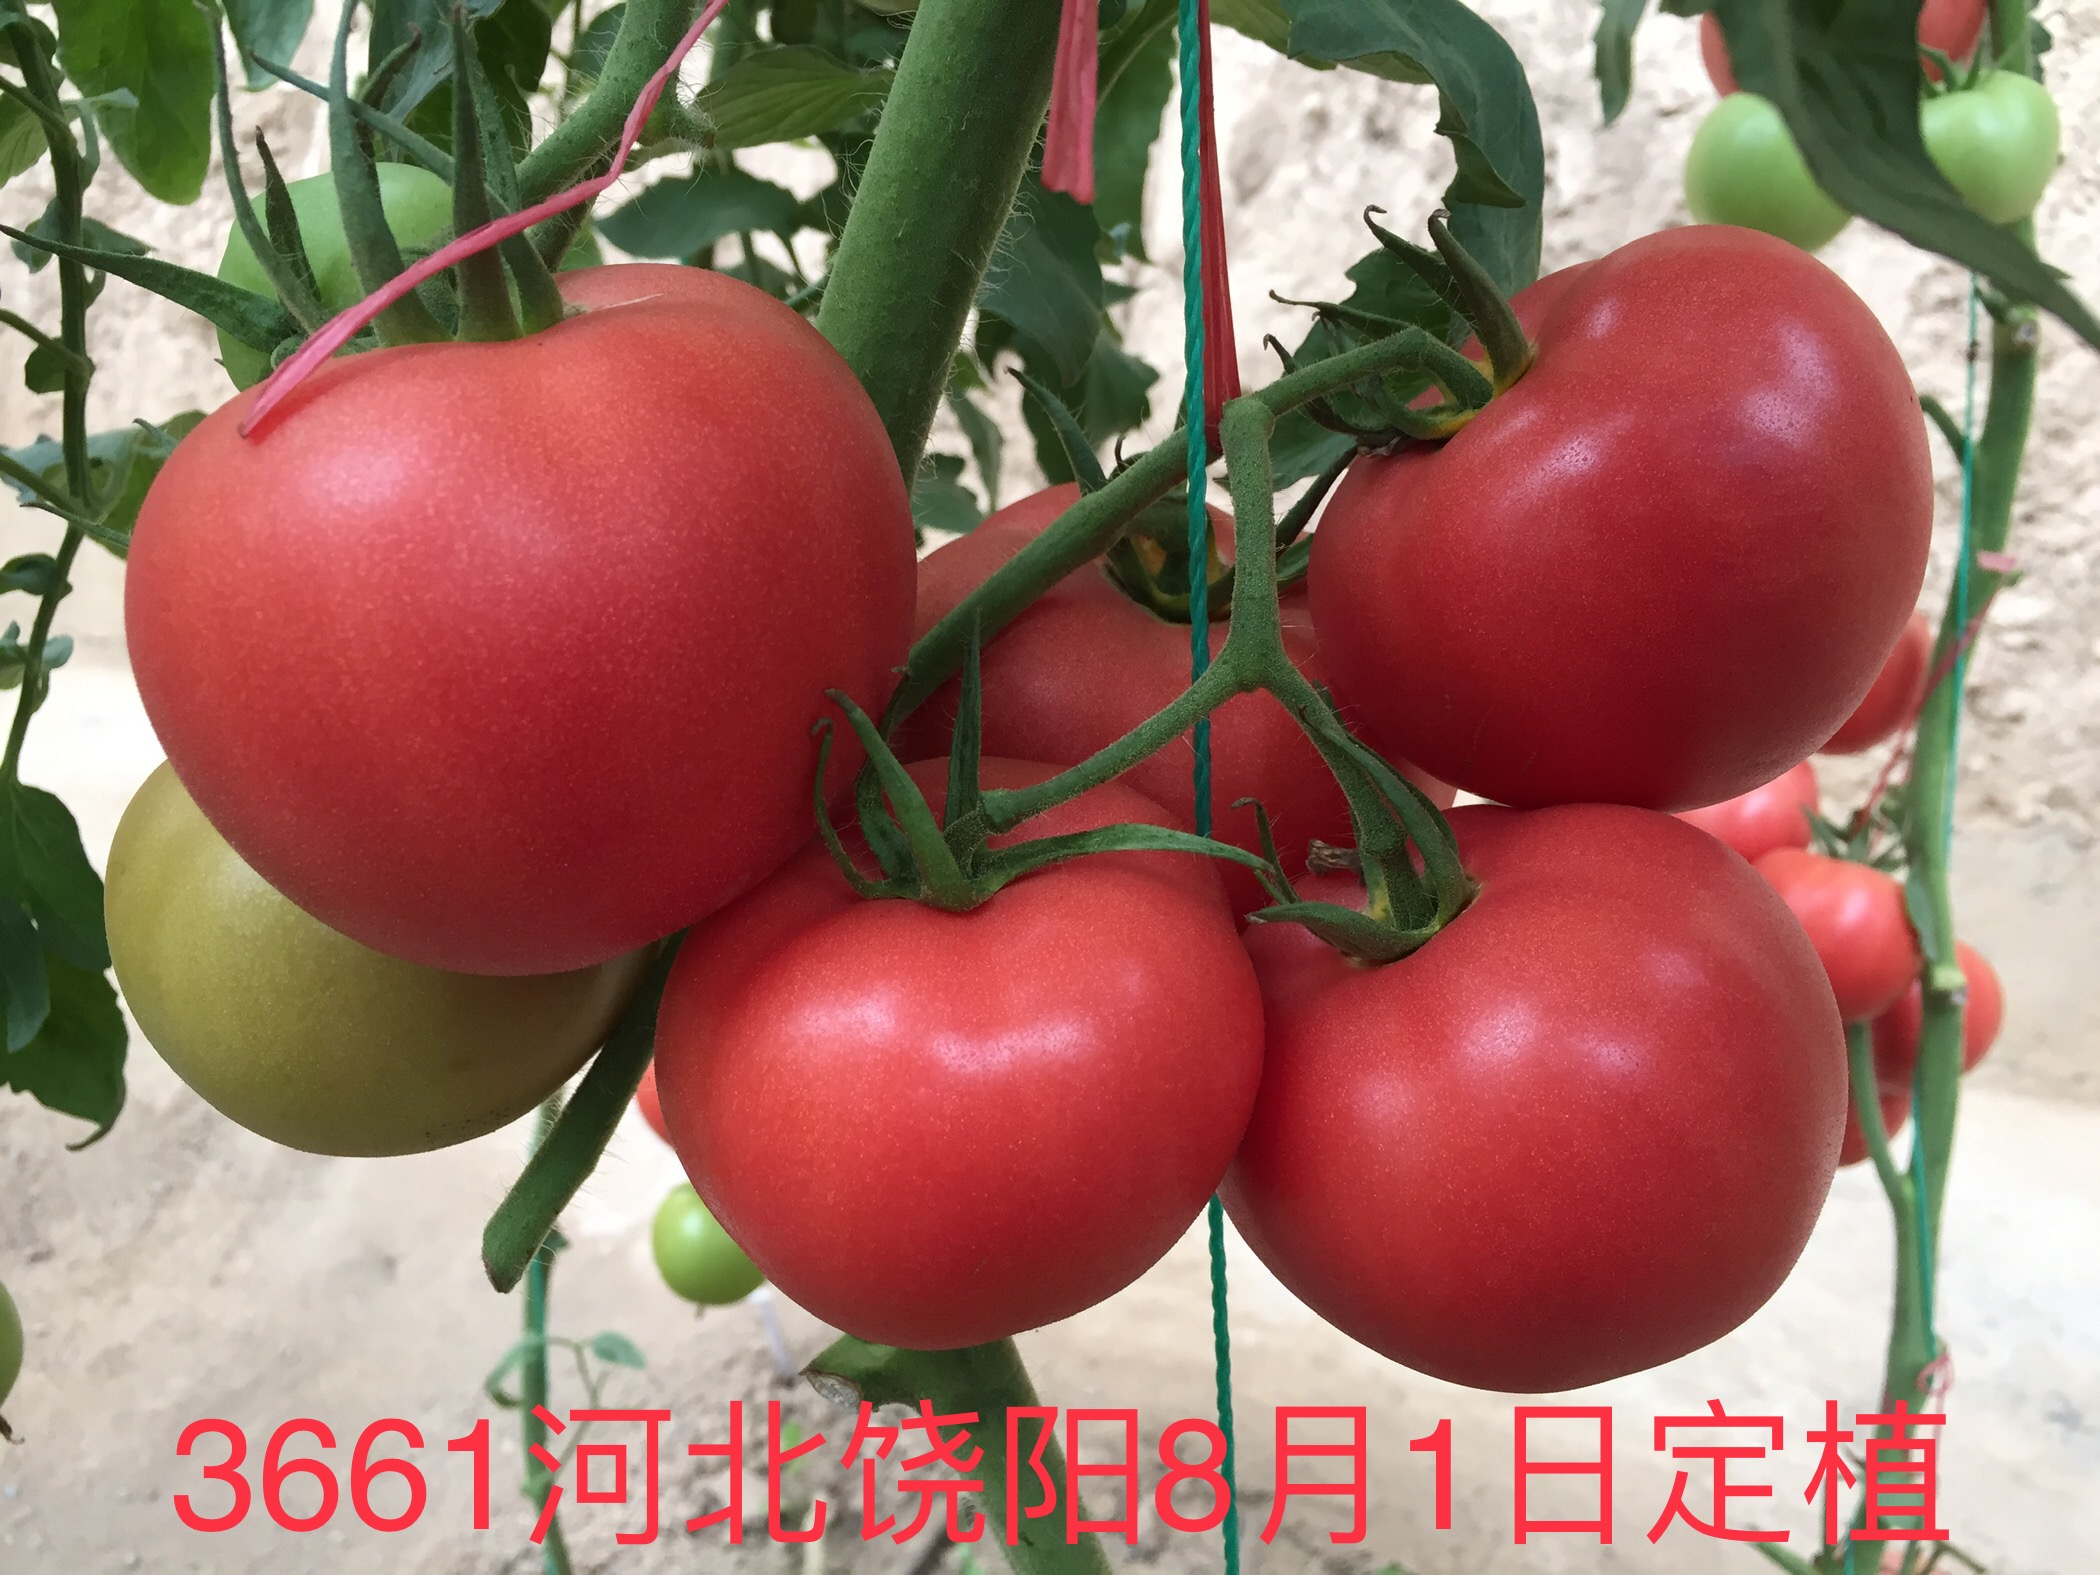 山东召开粉果新品种“福拉3661“现场会